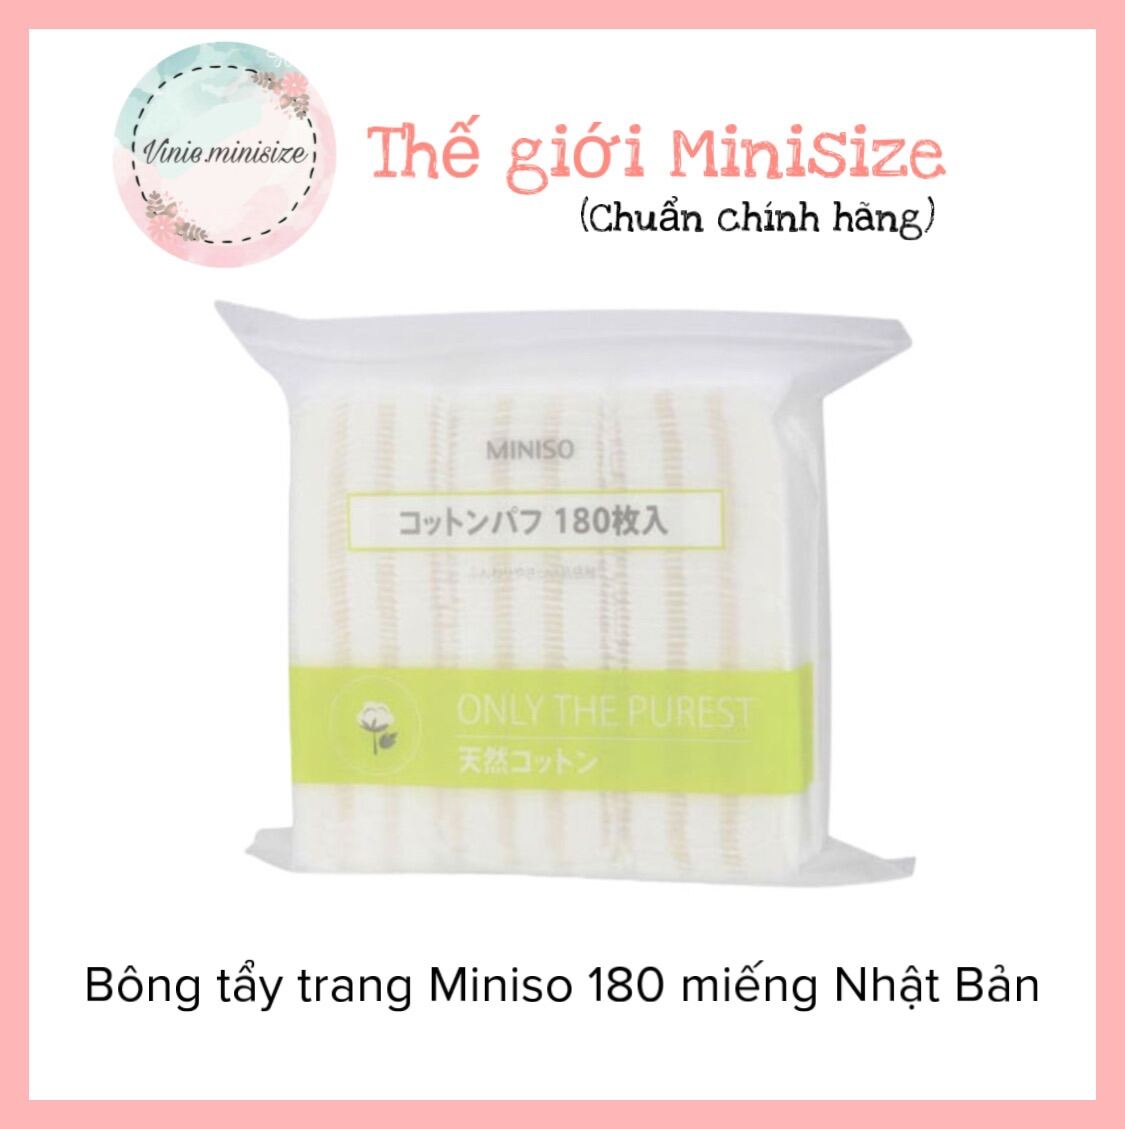 Bông tẩy trang Miniso 180 miếng Nhật Bản | Vinie.minisize